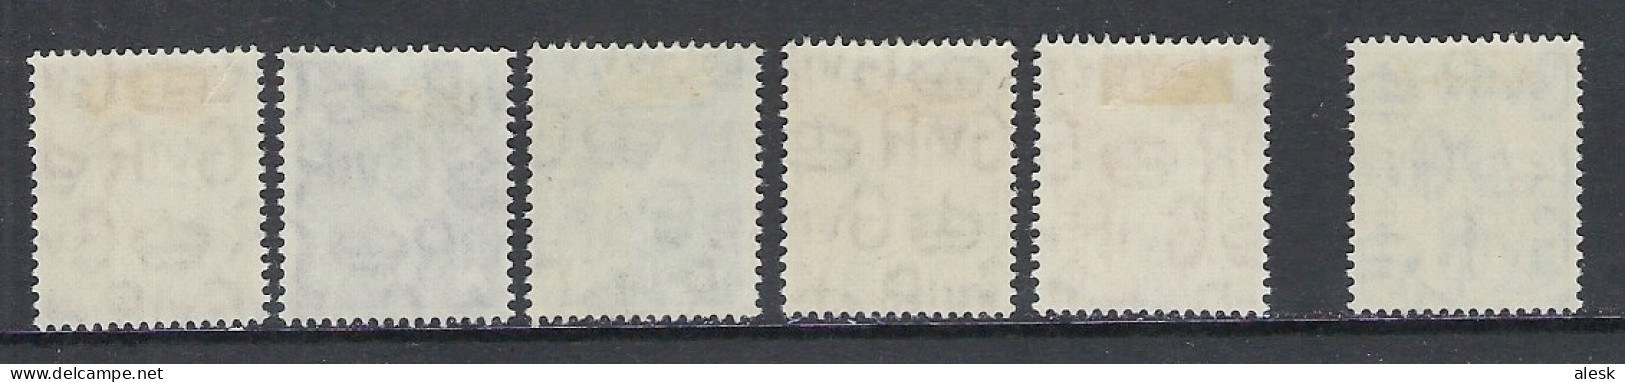 GRANDE-BRETAGNE 1951 - Série N°241 à 255 + 250 (y&t) Avec Charnière - Nuovi